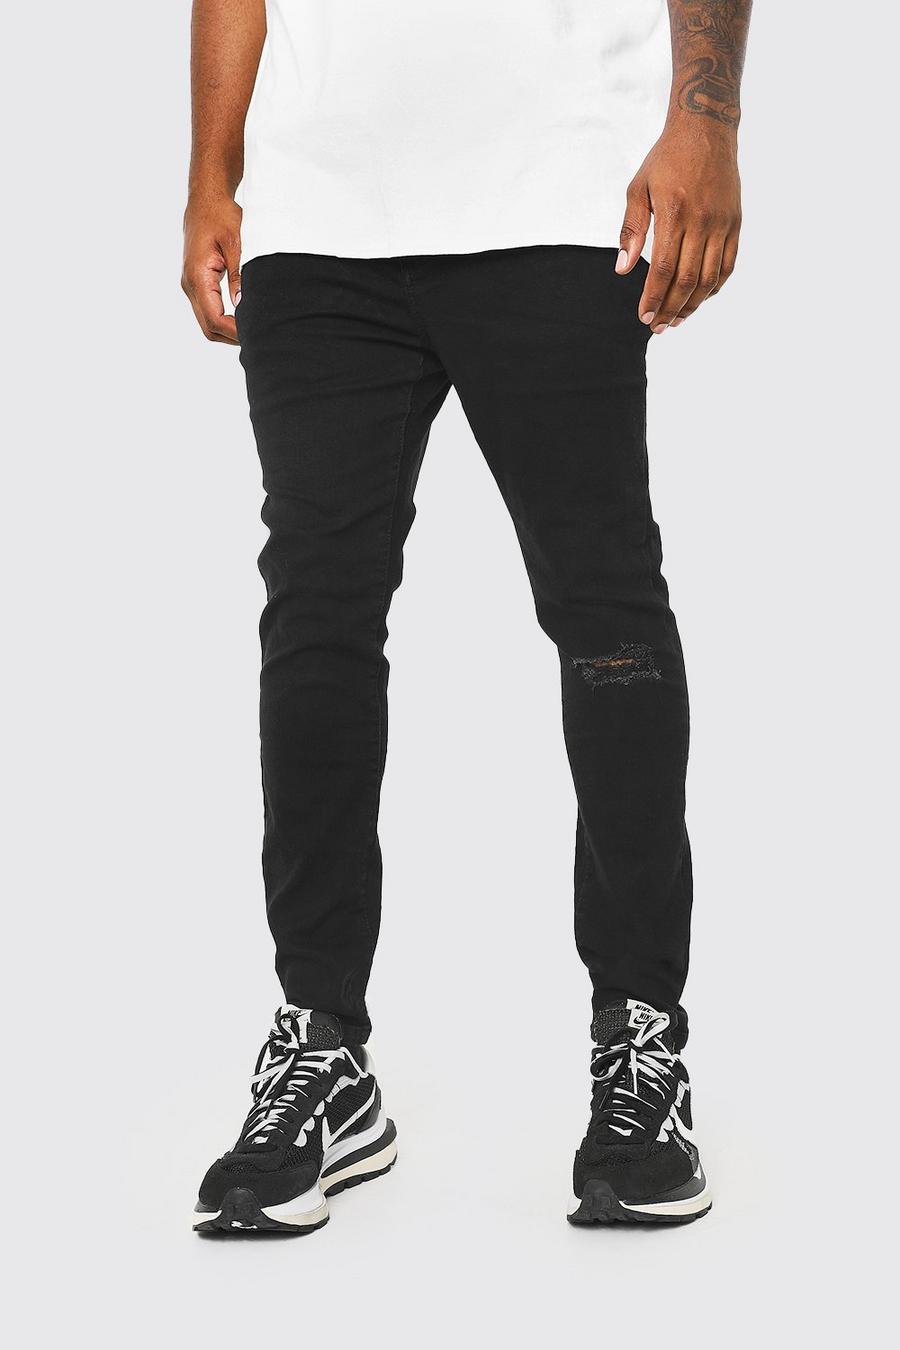 שחור מכנסי ג'ינס סופר סקיני עם ברך קרועה לגברים גדולים וגבוהים image number 1